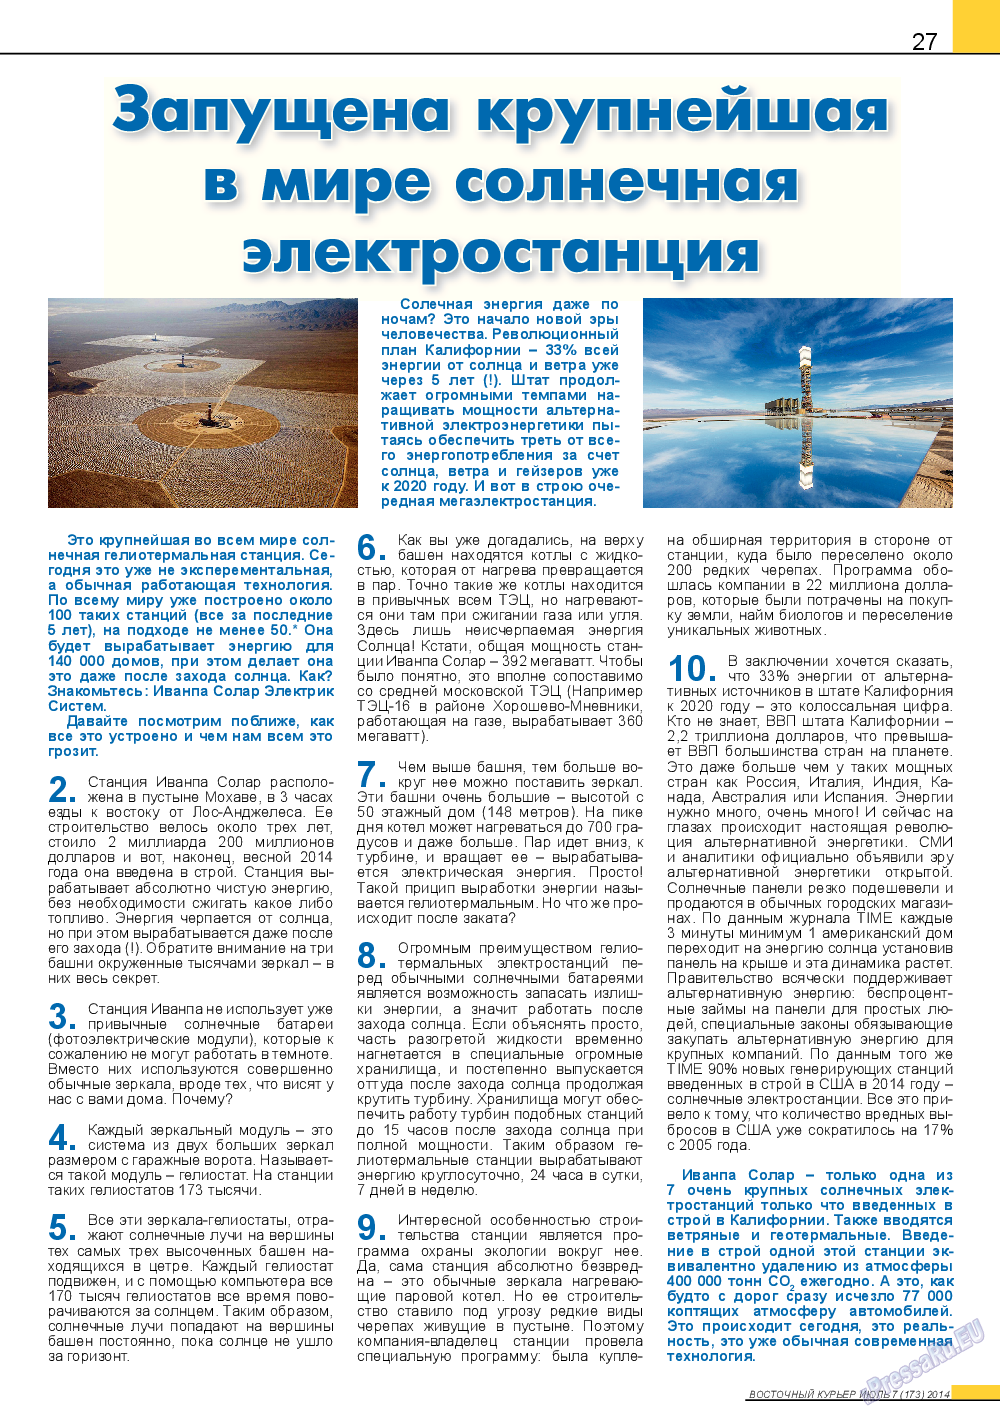 Восточный курьер (журнал). 2014 год, номер 7, стр. 27